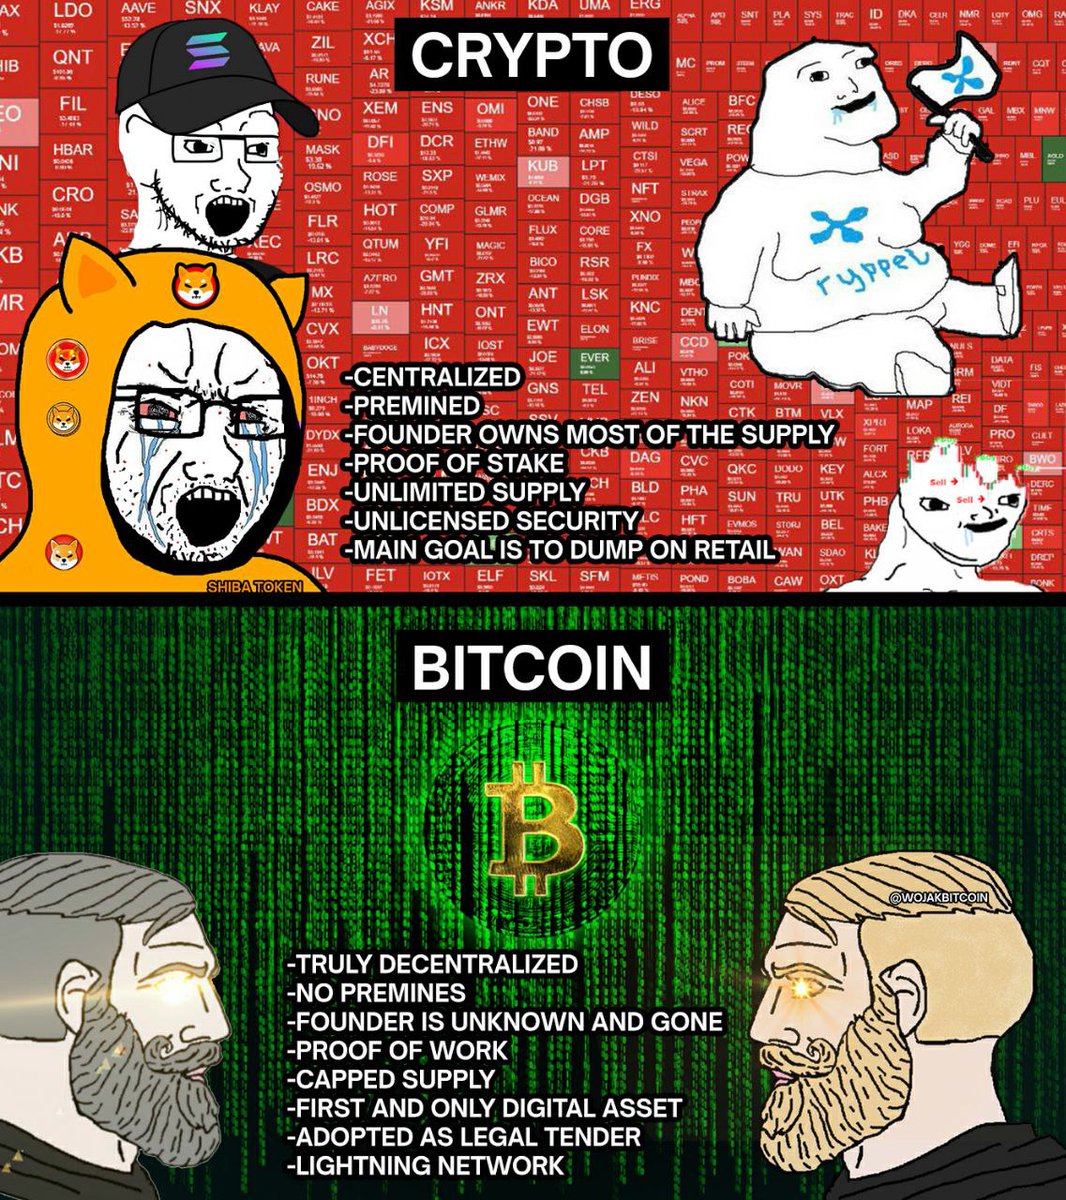 Bitcoin, not crypto.